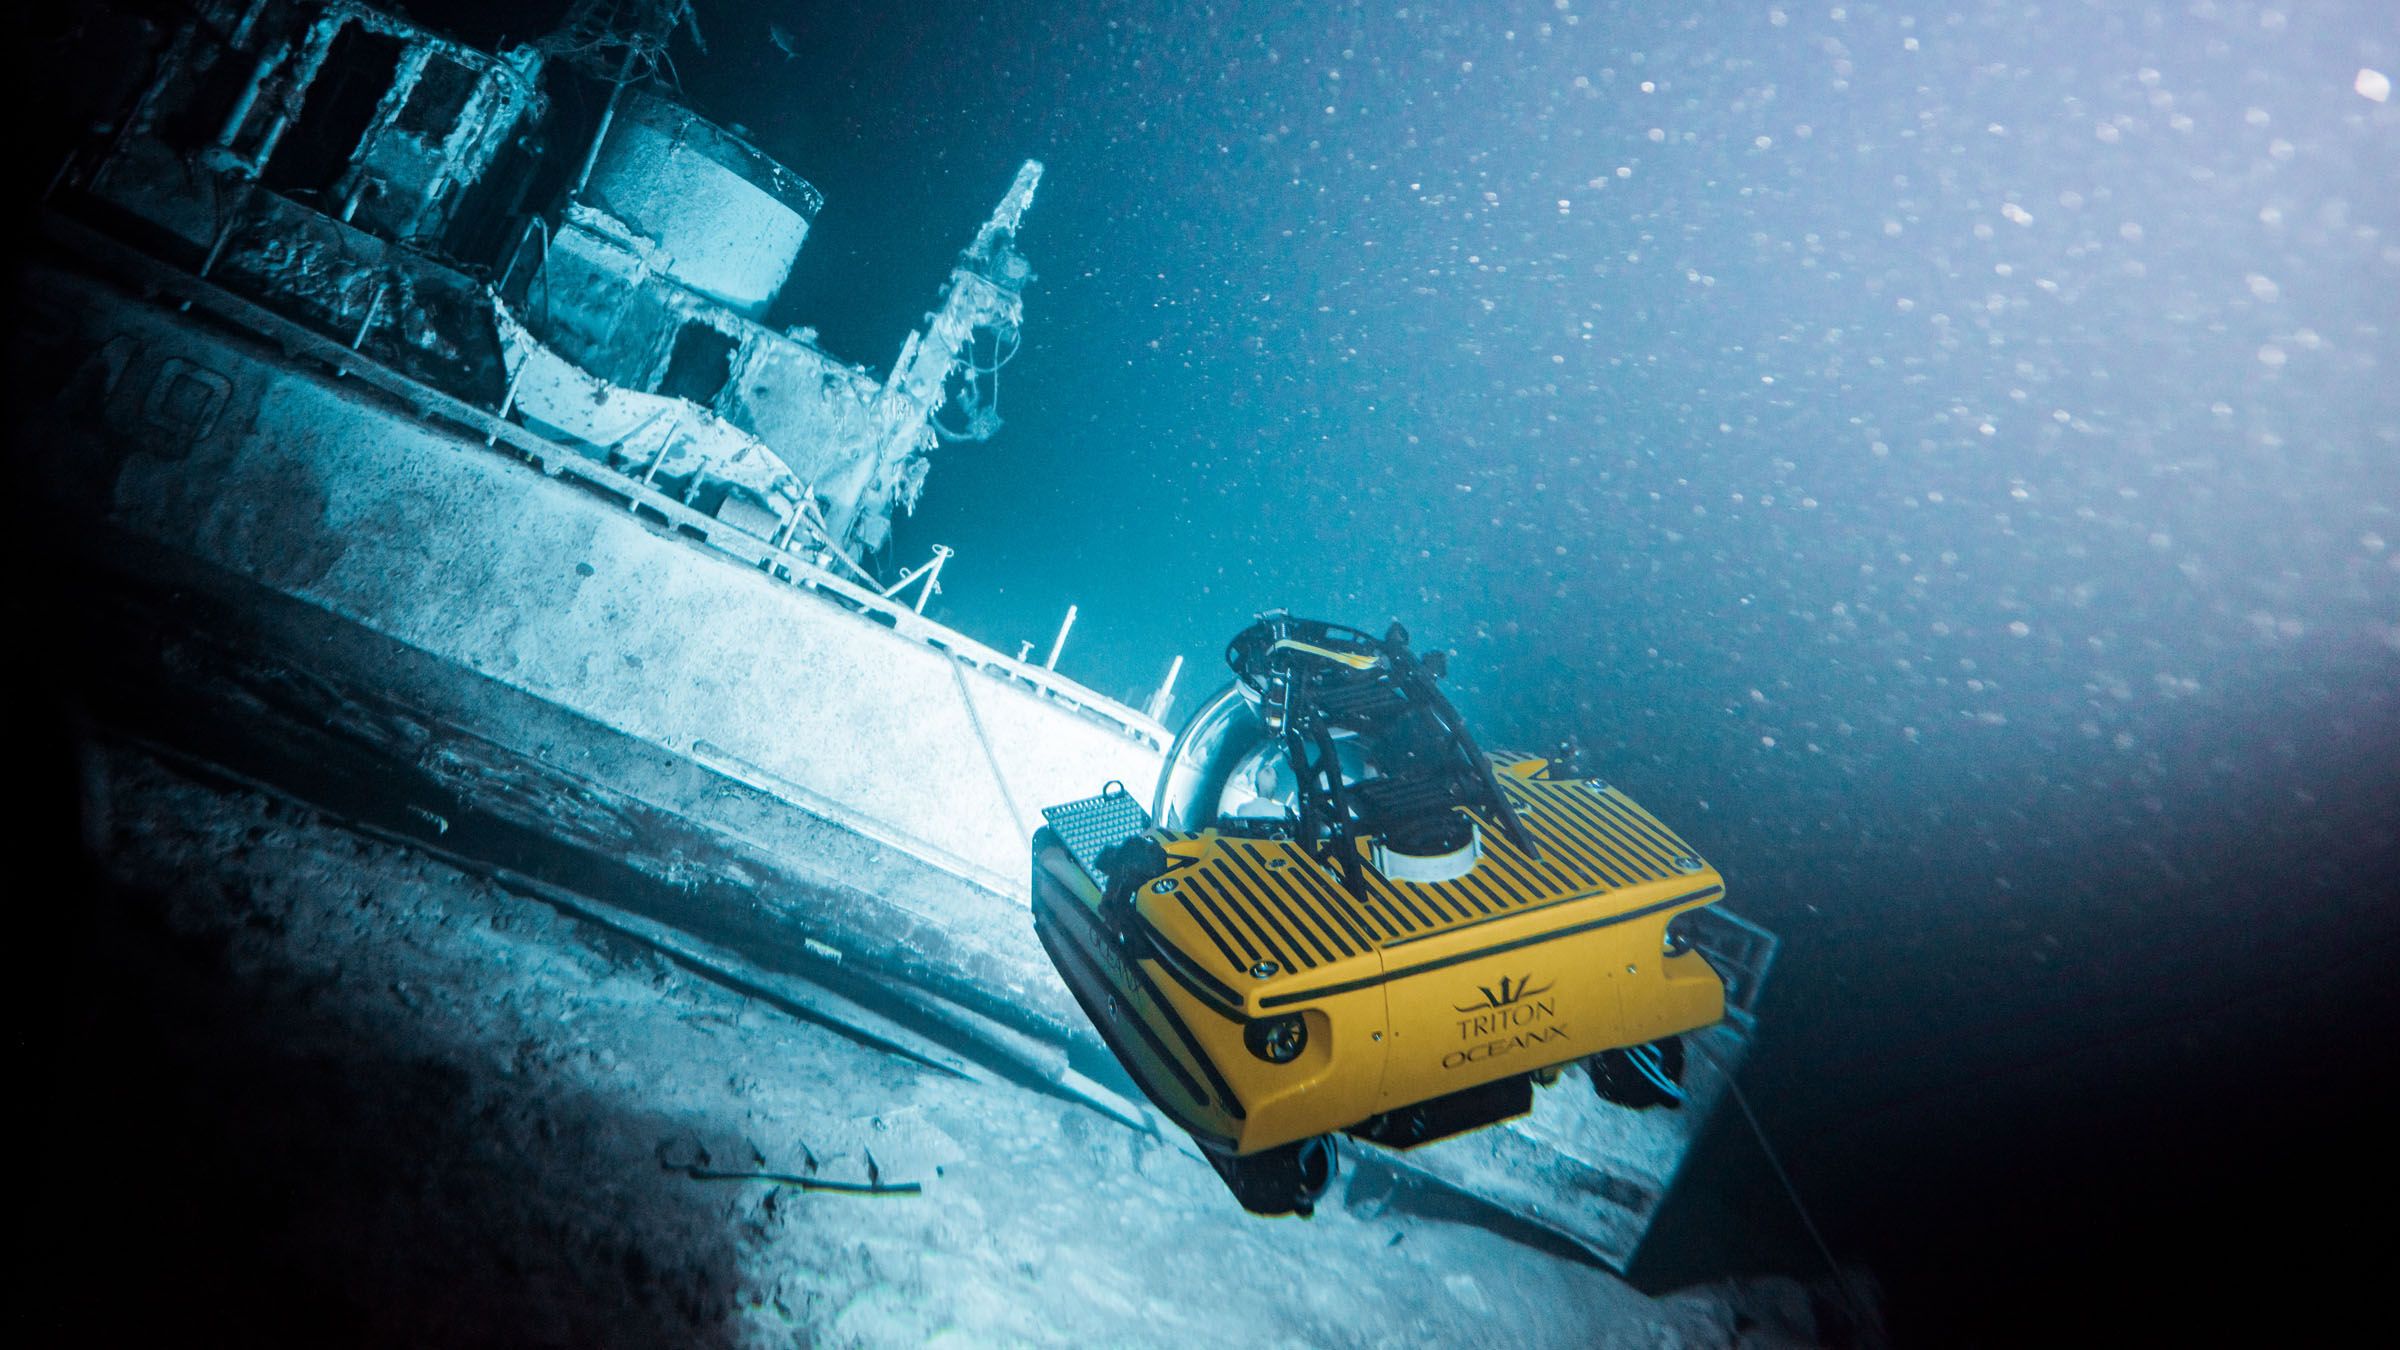 Además de utilizarse en prospecciones científicas, los submarinos tripulados permiten inspeccionar otros elementos en el fondo del mar como las infraestructuras críticas. (Triton Submarines / Allison Markova)